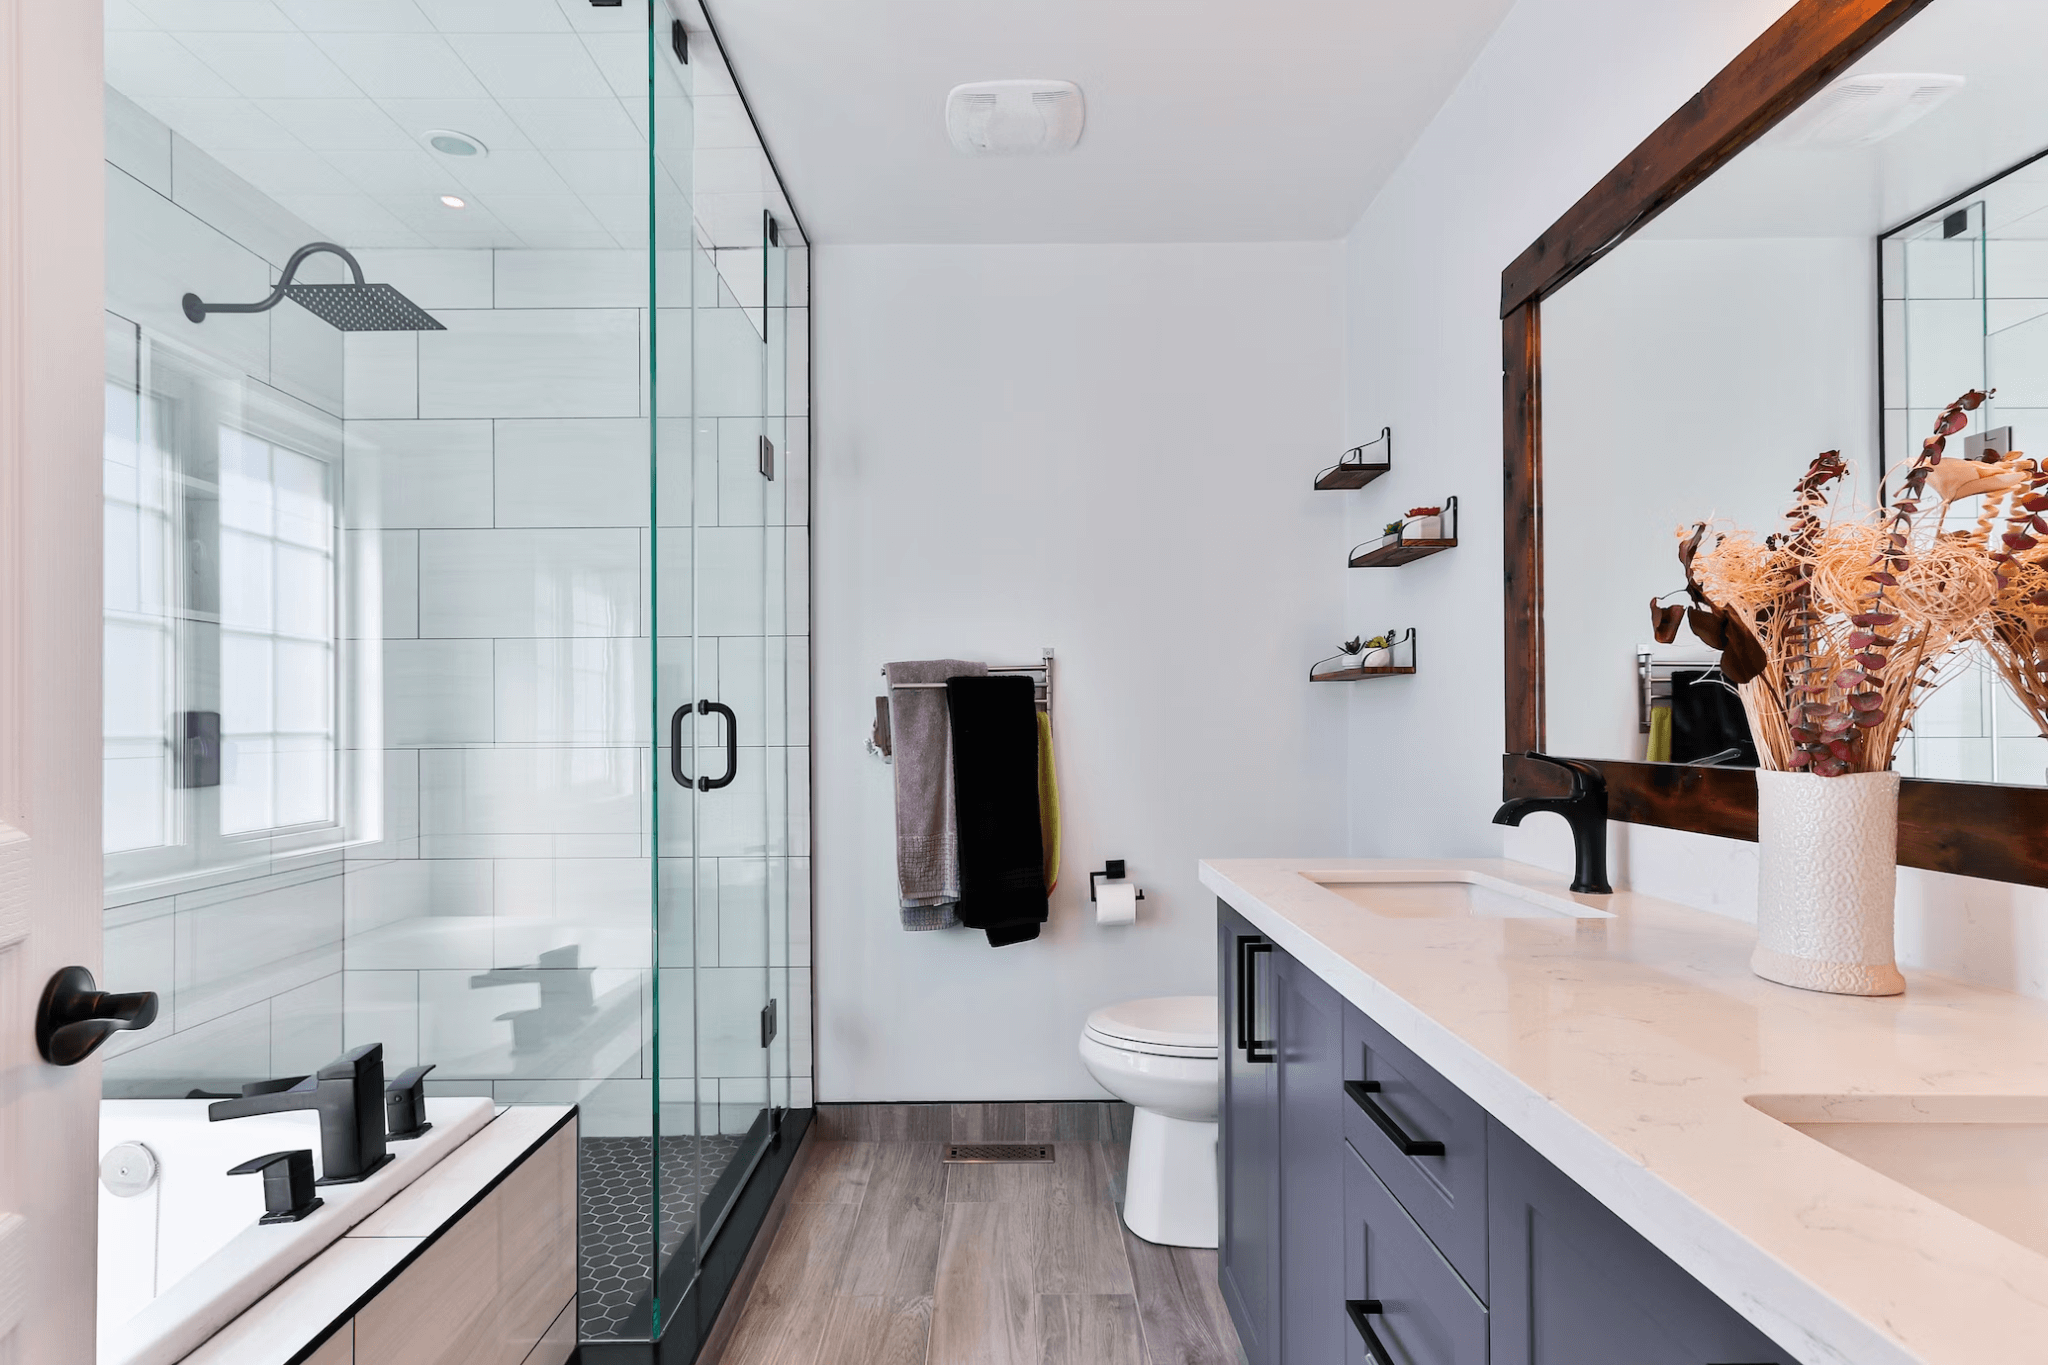 Отдельно стоящая или встроенная мебель для ванной: что лучше?